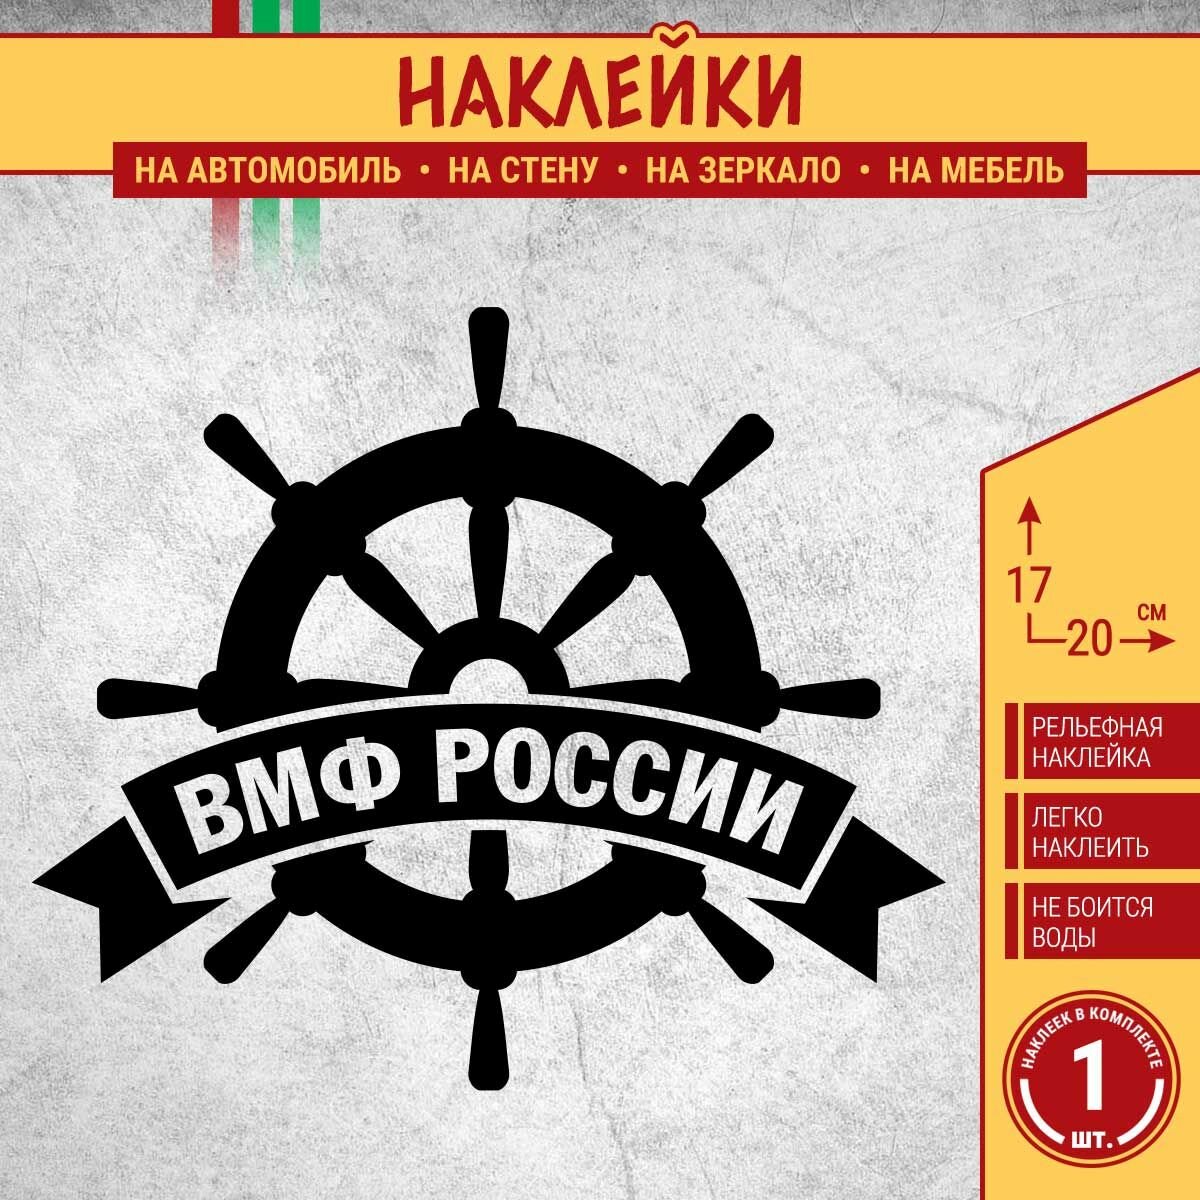 Наклейка на автомобиль "Штурвал Военно-морской флот ВМФ России" 1 шт, 20х17 см, черная